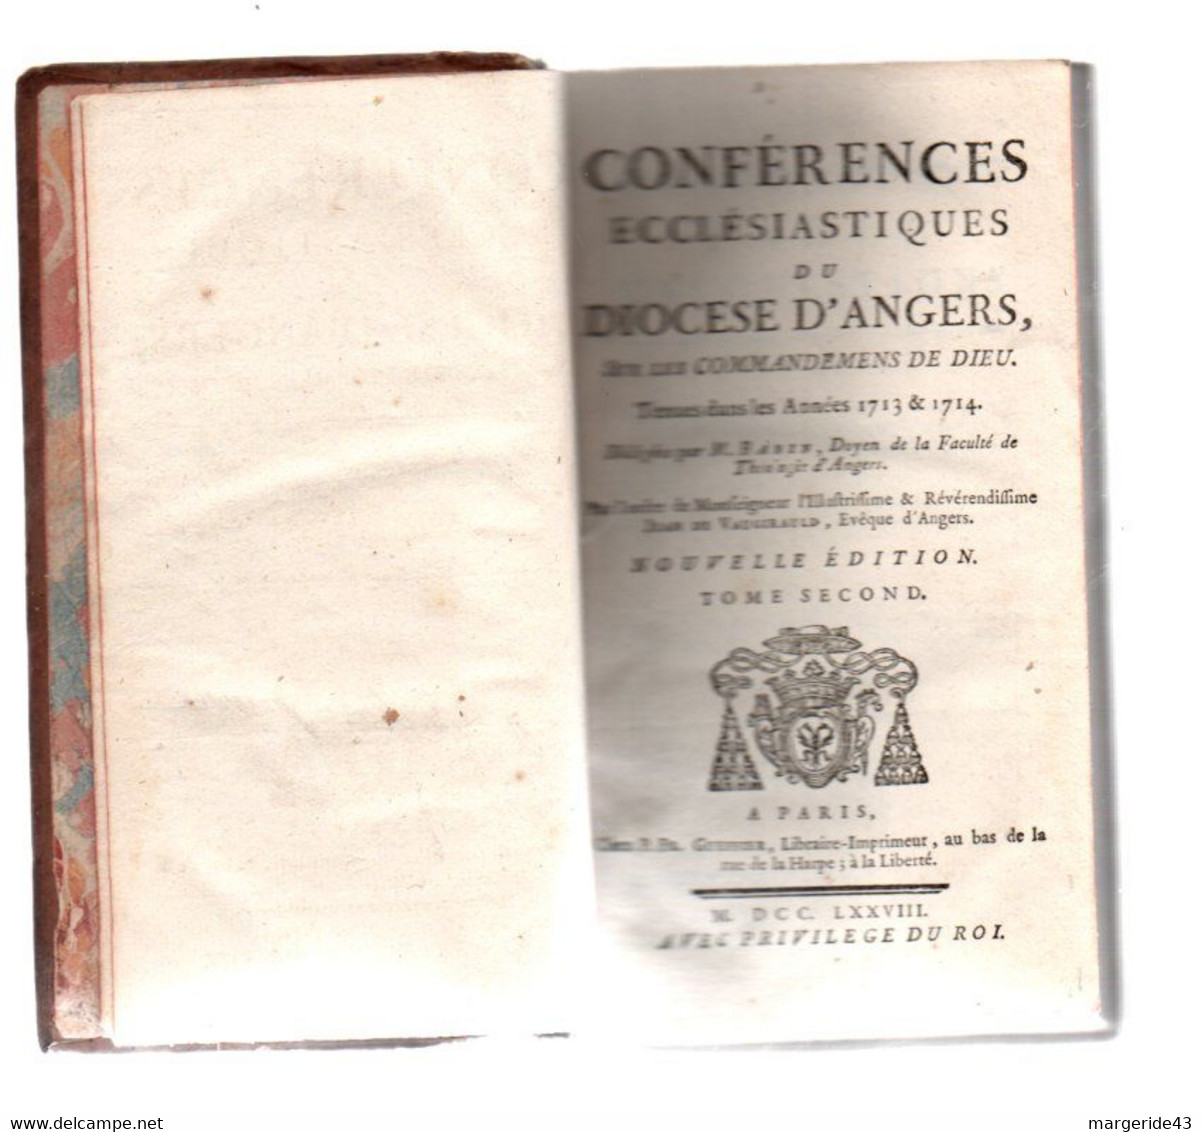 15 VOLUMES CONFERENCES ECCLESIASTIQUES DU DIOCESE D'ANGERS 1778 SUR LE SACREMENT DE L'ORDRE